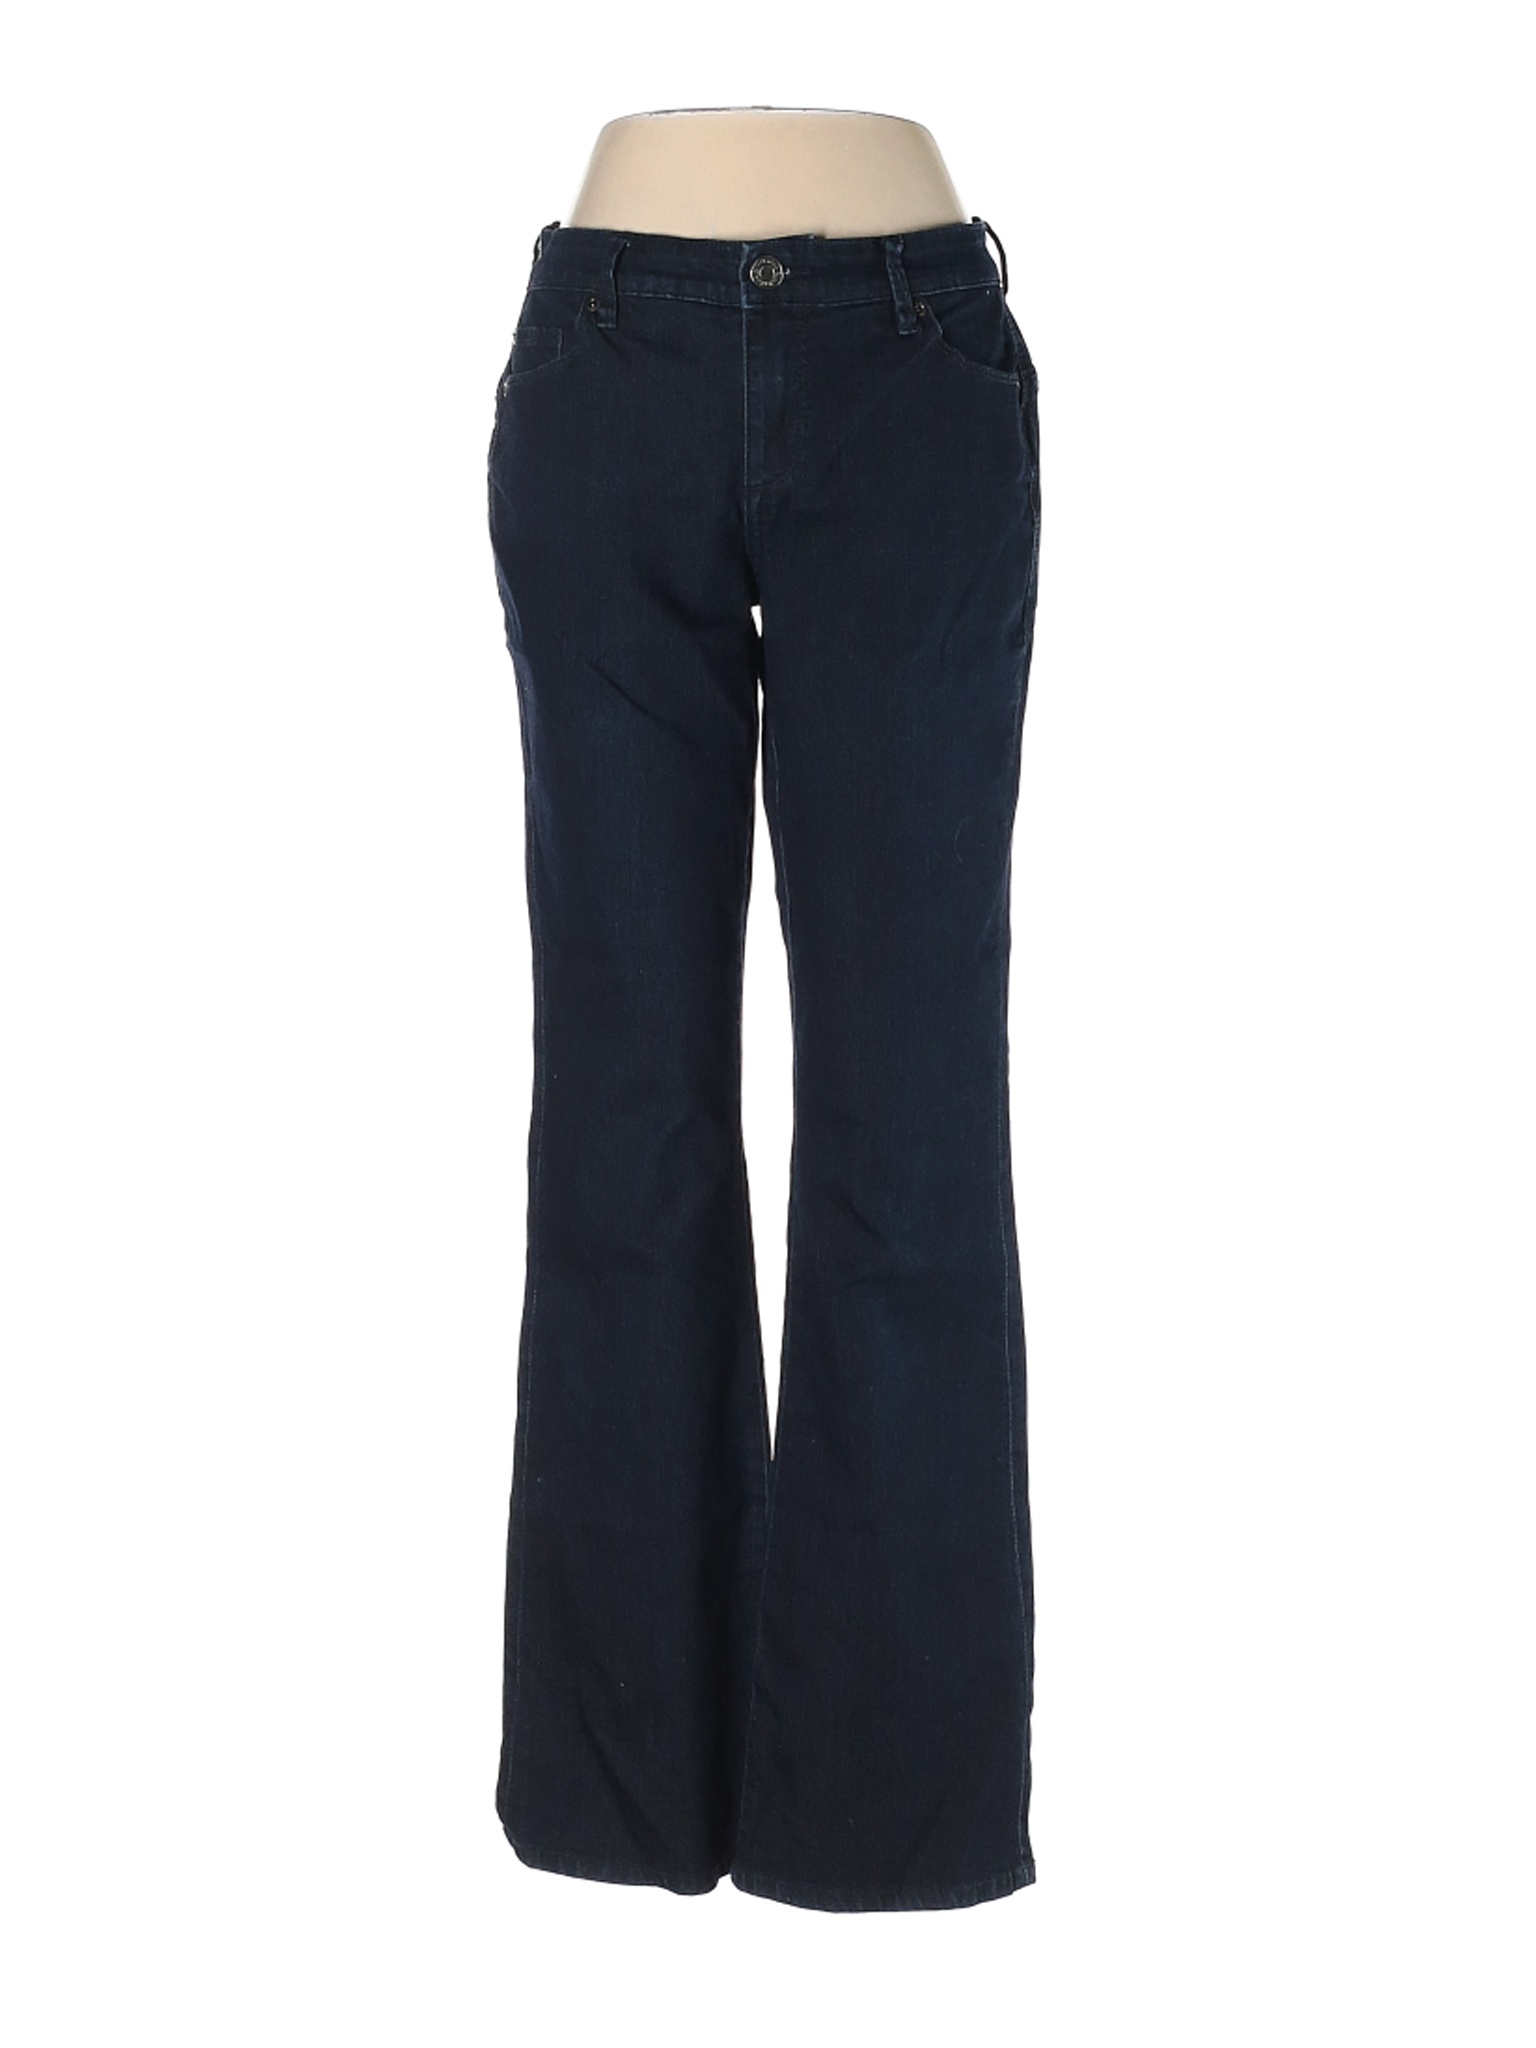 CALVIN KLEIN JEANS Women Blue Jeans 4 | eBay